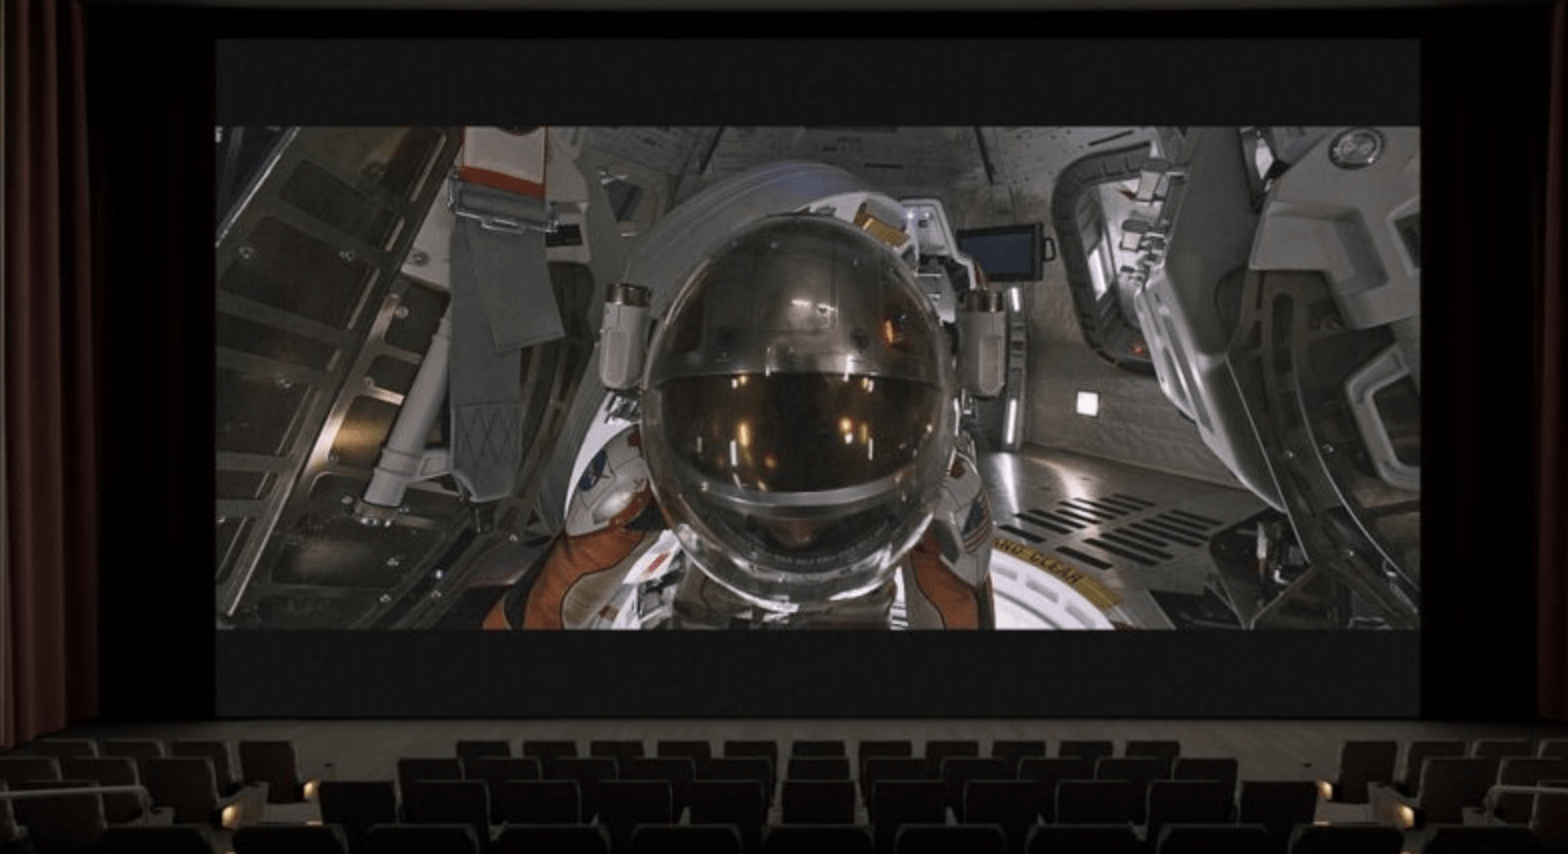 Skybox VR позволяет смотреть фильмы на Quest* через USB-накопитель